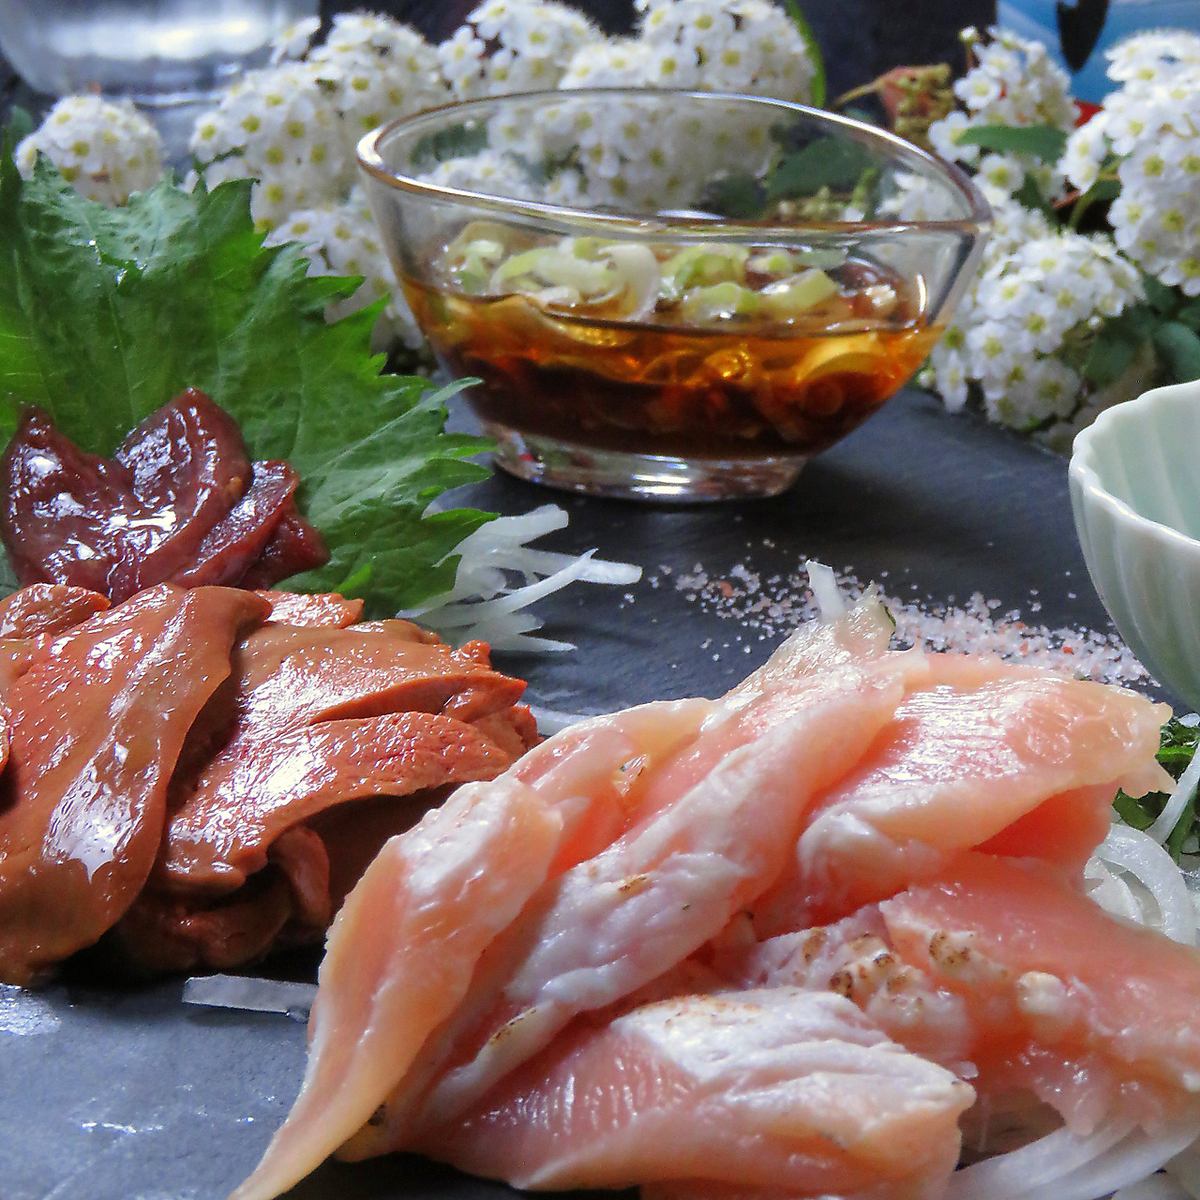 黑猪肉涮锅&烤萨摩鸡【自助餐】+7道菜品+2小时【自助饮】4,500日元→4,000日元